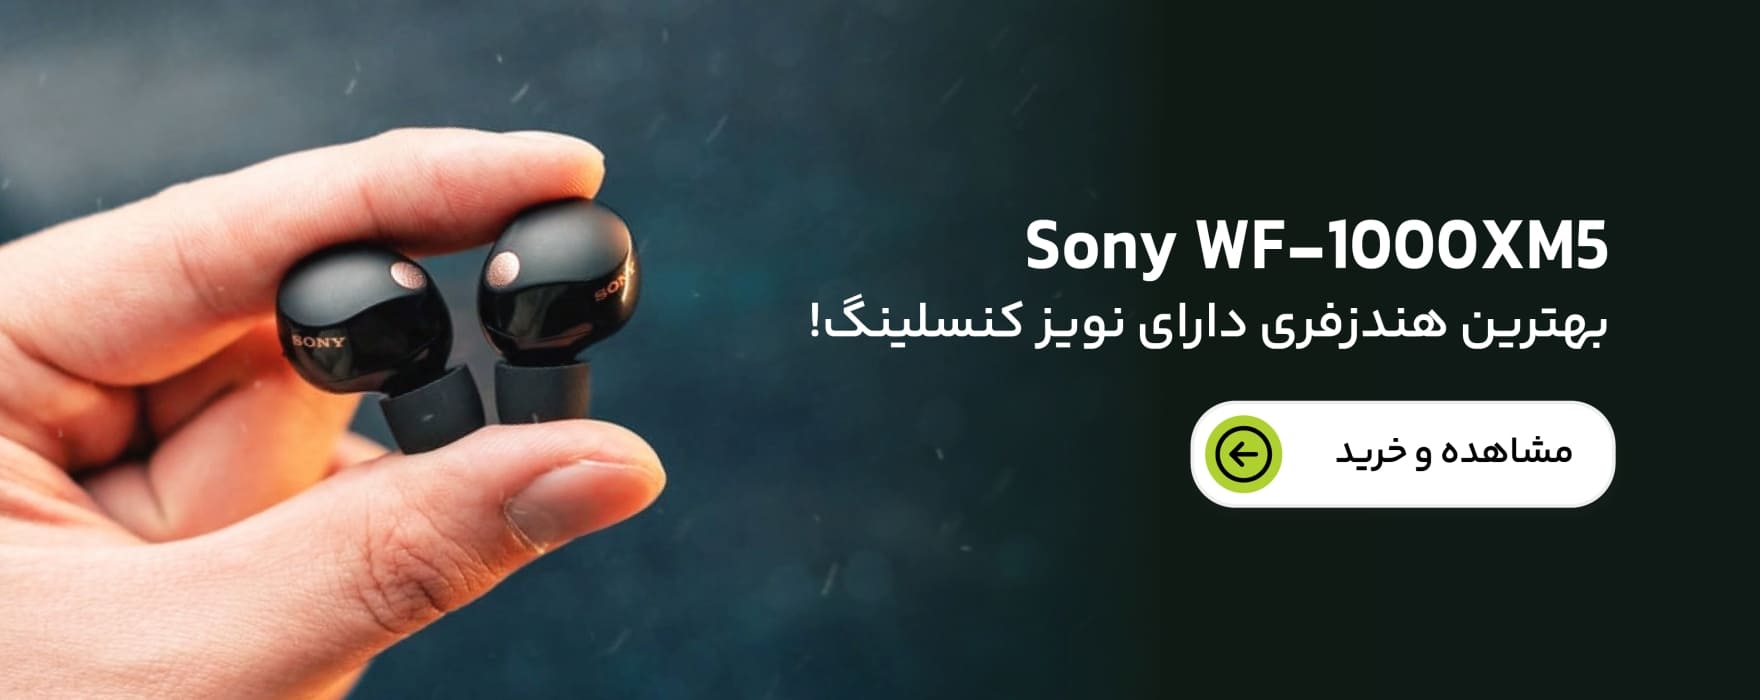 هندزفری Sony WF-1000XM5